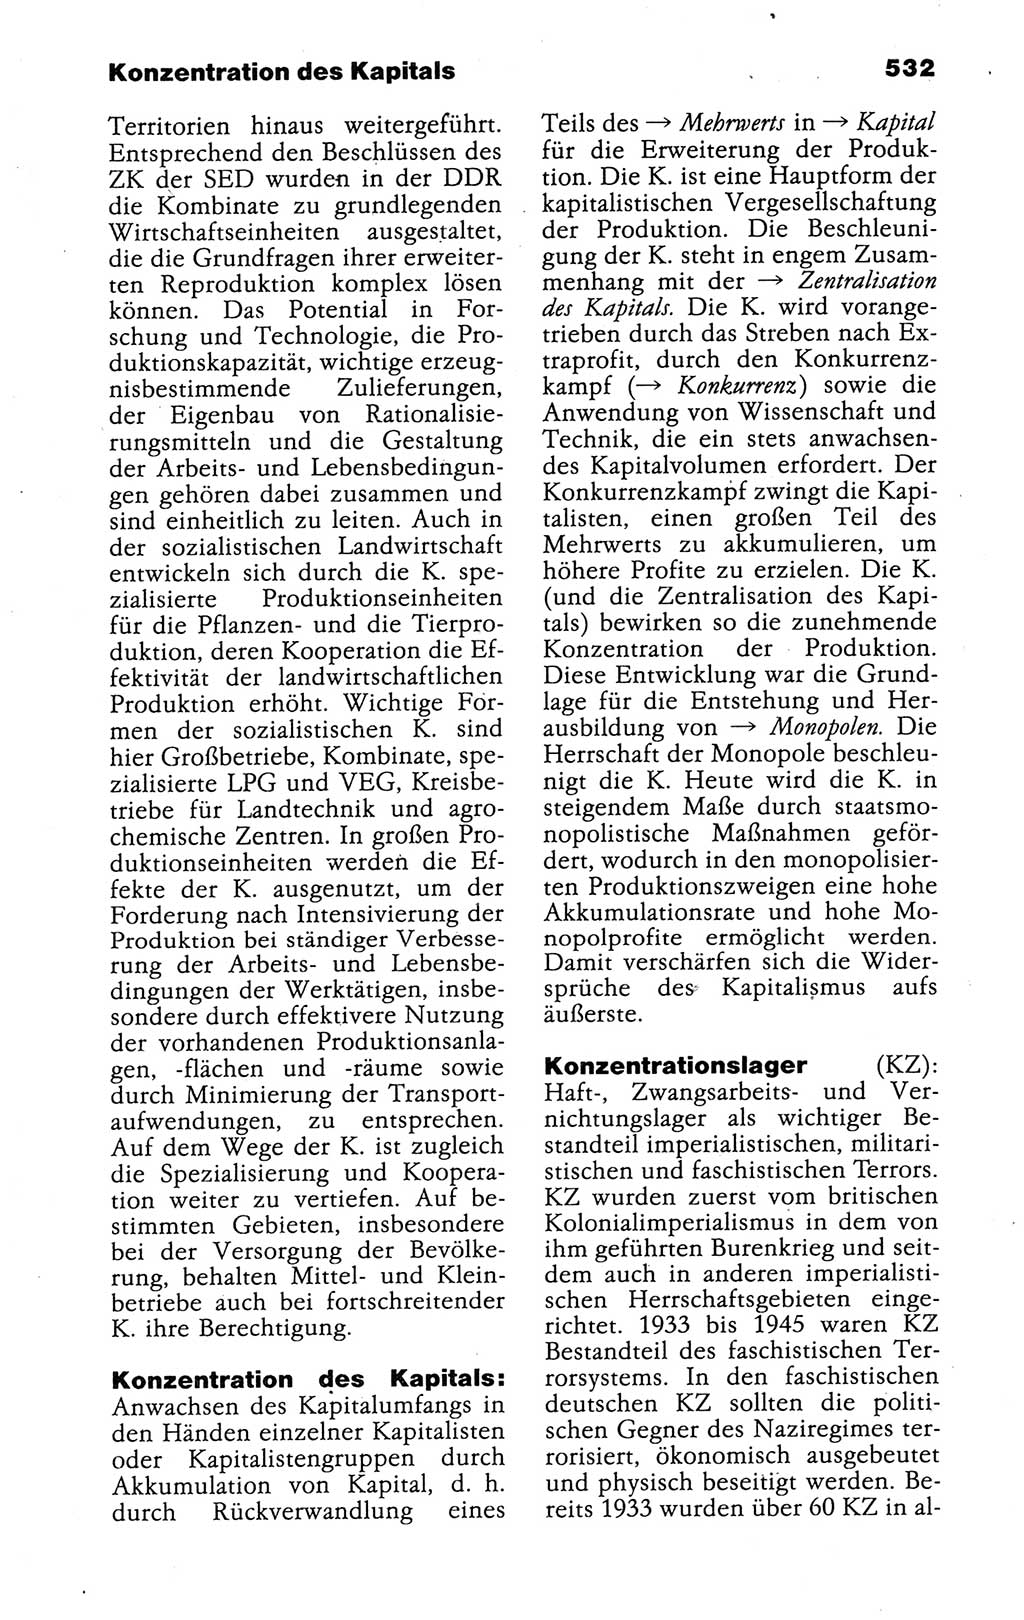 Kleines politisches Wörterbuch [Deutsche Demokratische Republik (DDR)] 1988, Seite 532 (Kl. pol. Wb. DDR 1988, S. 532)